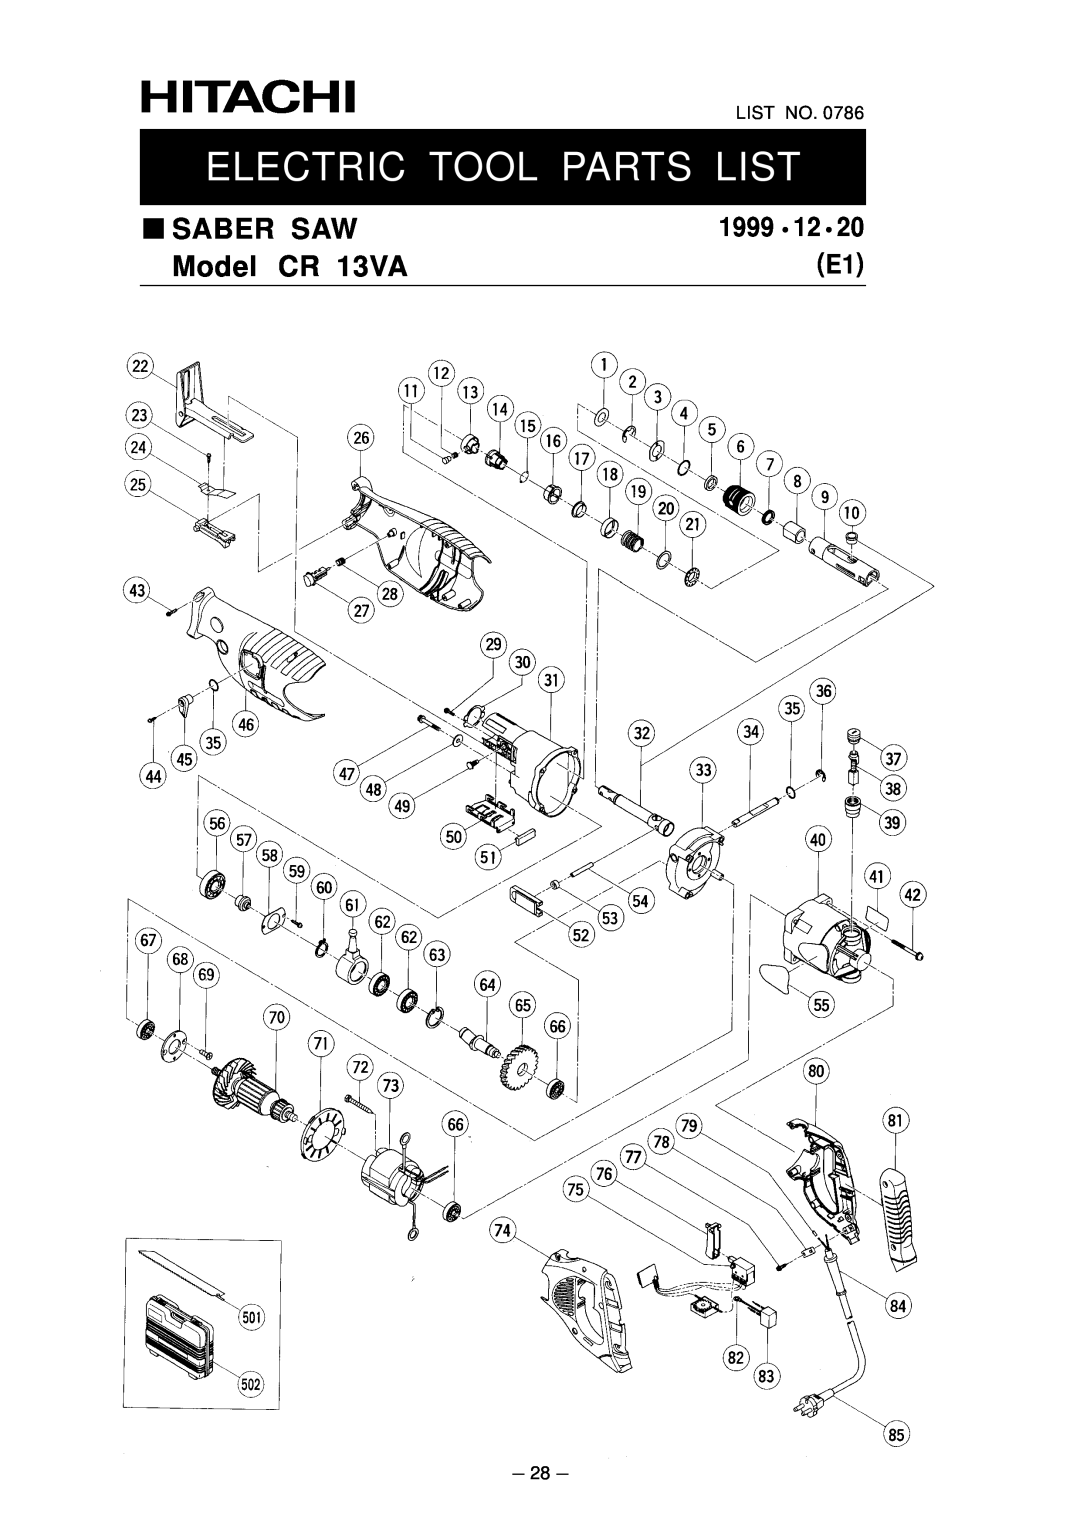 Hitachi service manual Electric Tool Parts List, Saber Saw, Model CR 13VA, 1999, List No 